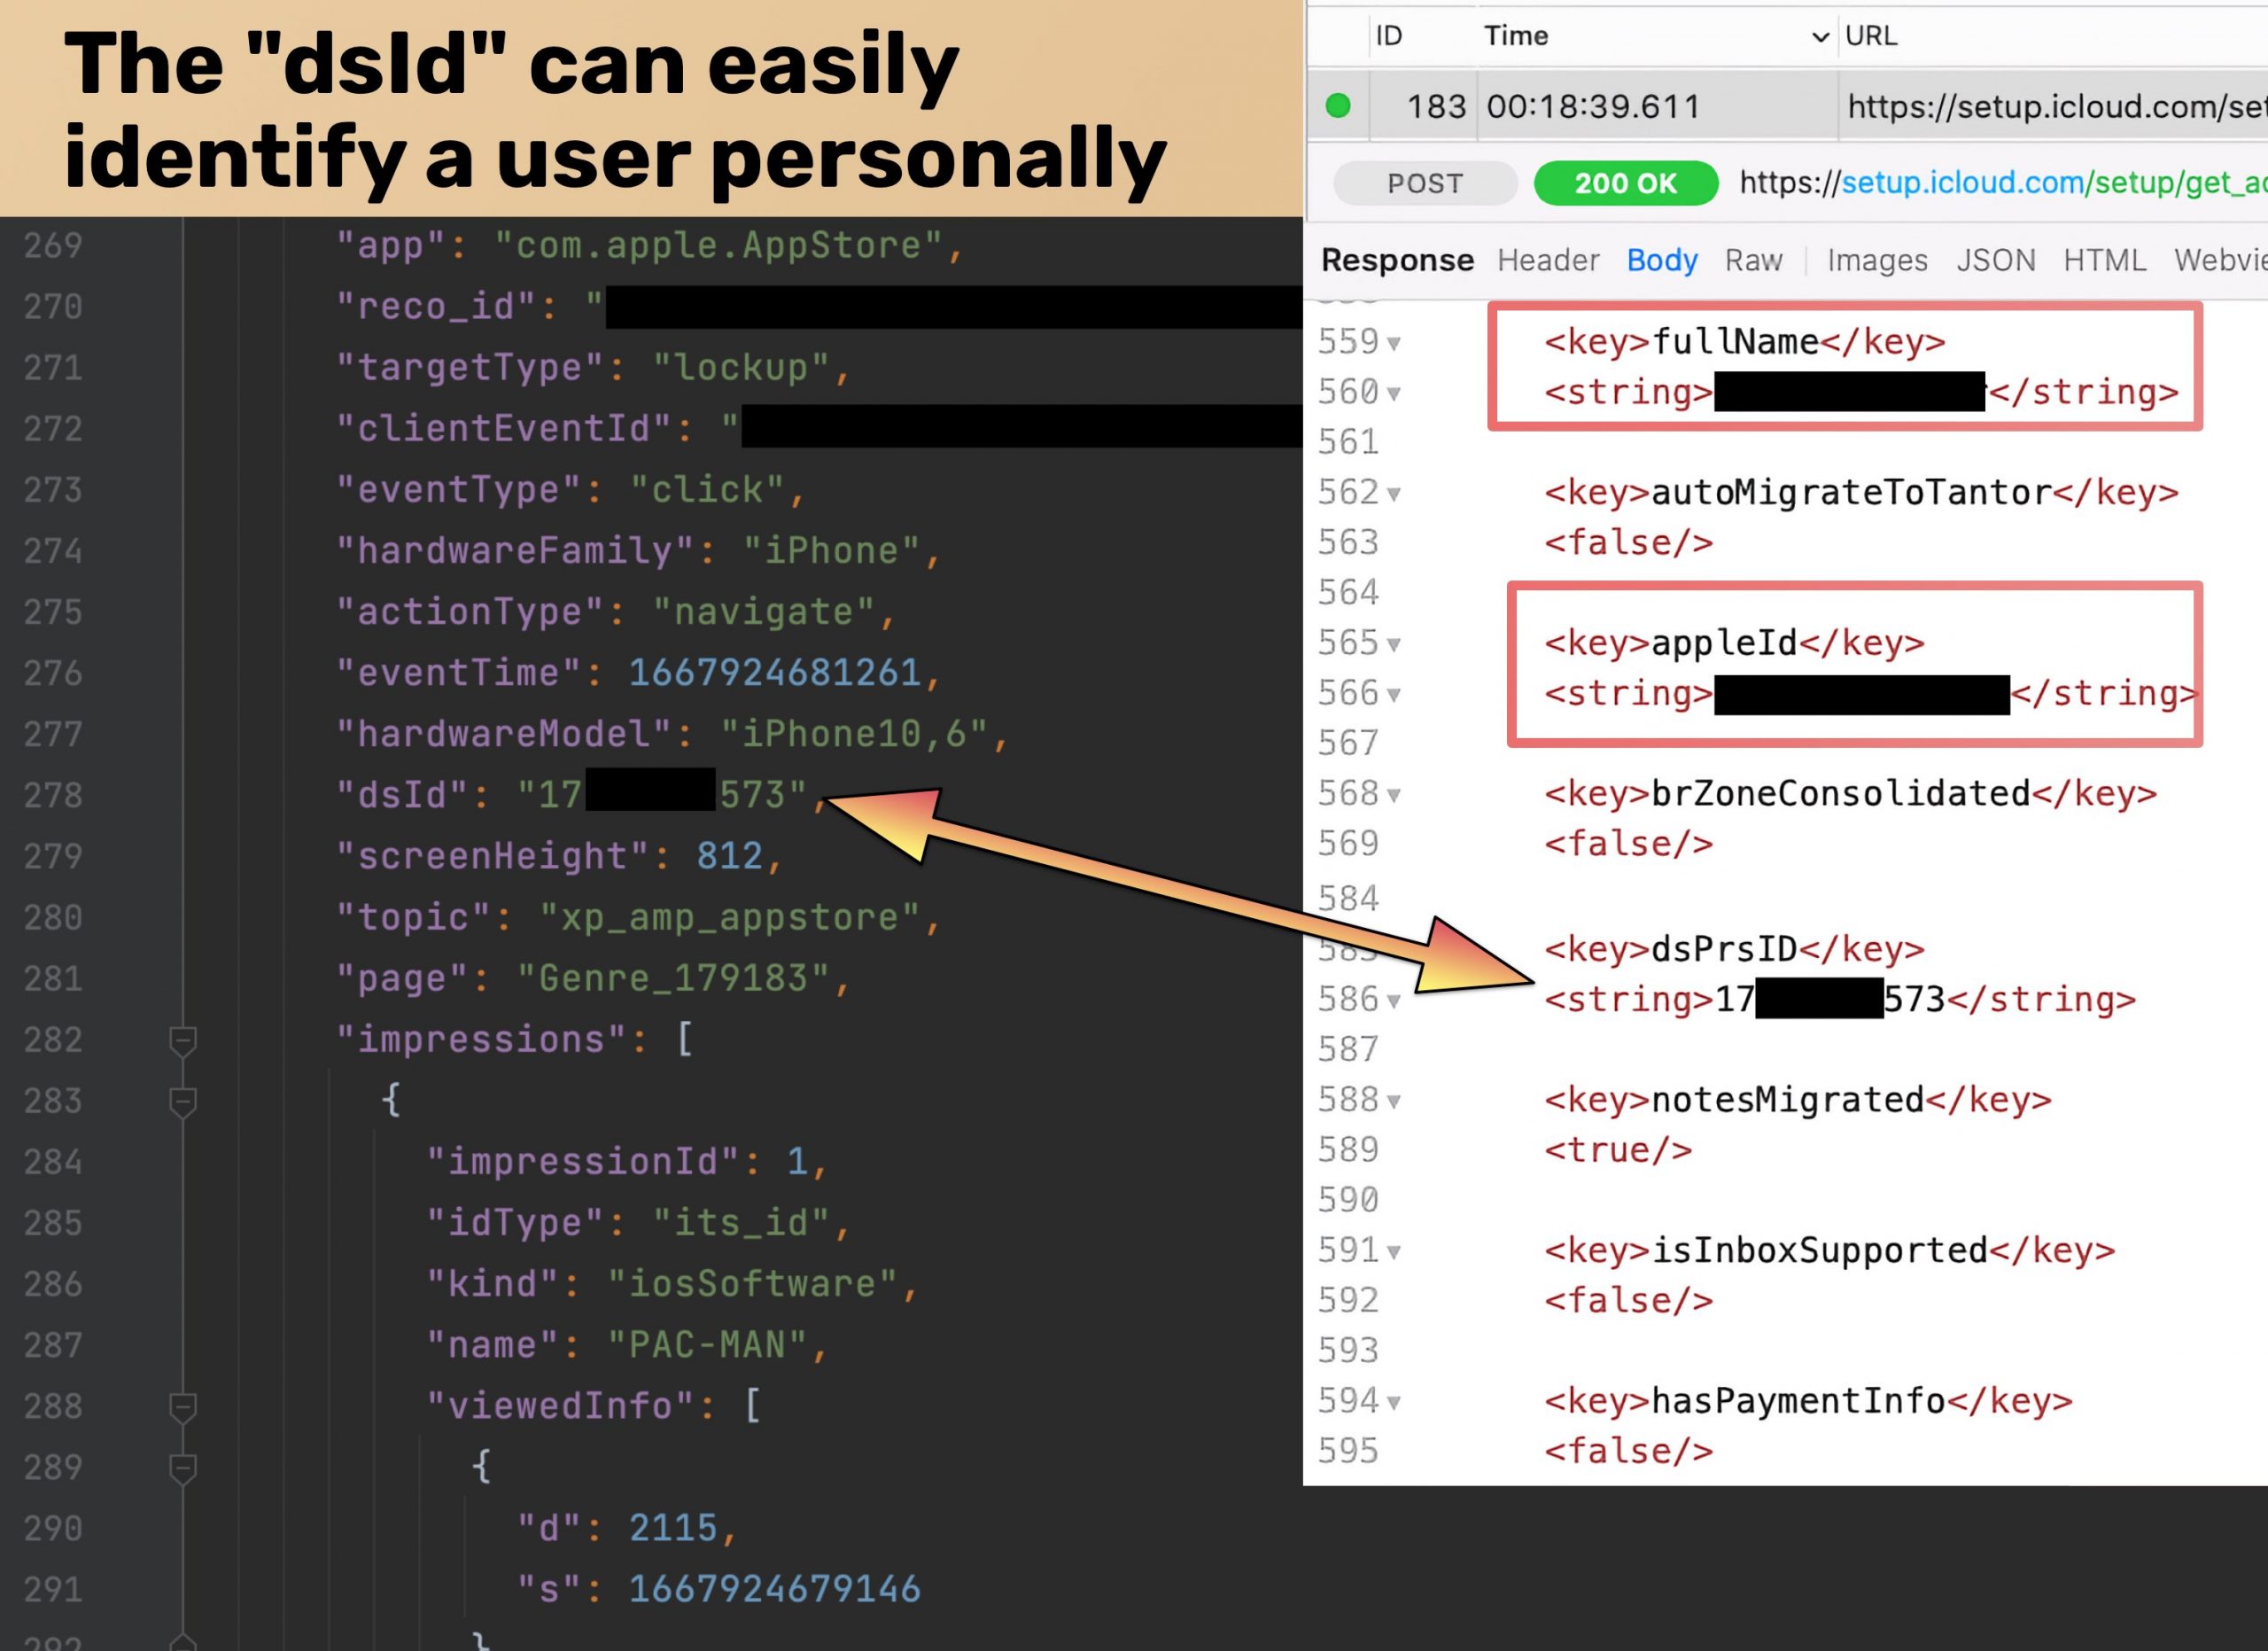 Identificador dsID en los datos de uso de iOS enviados a Apple